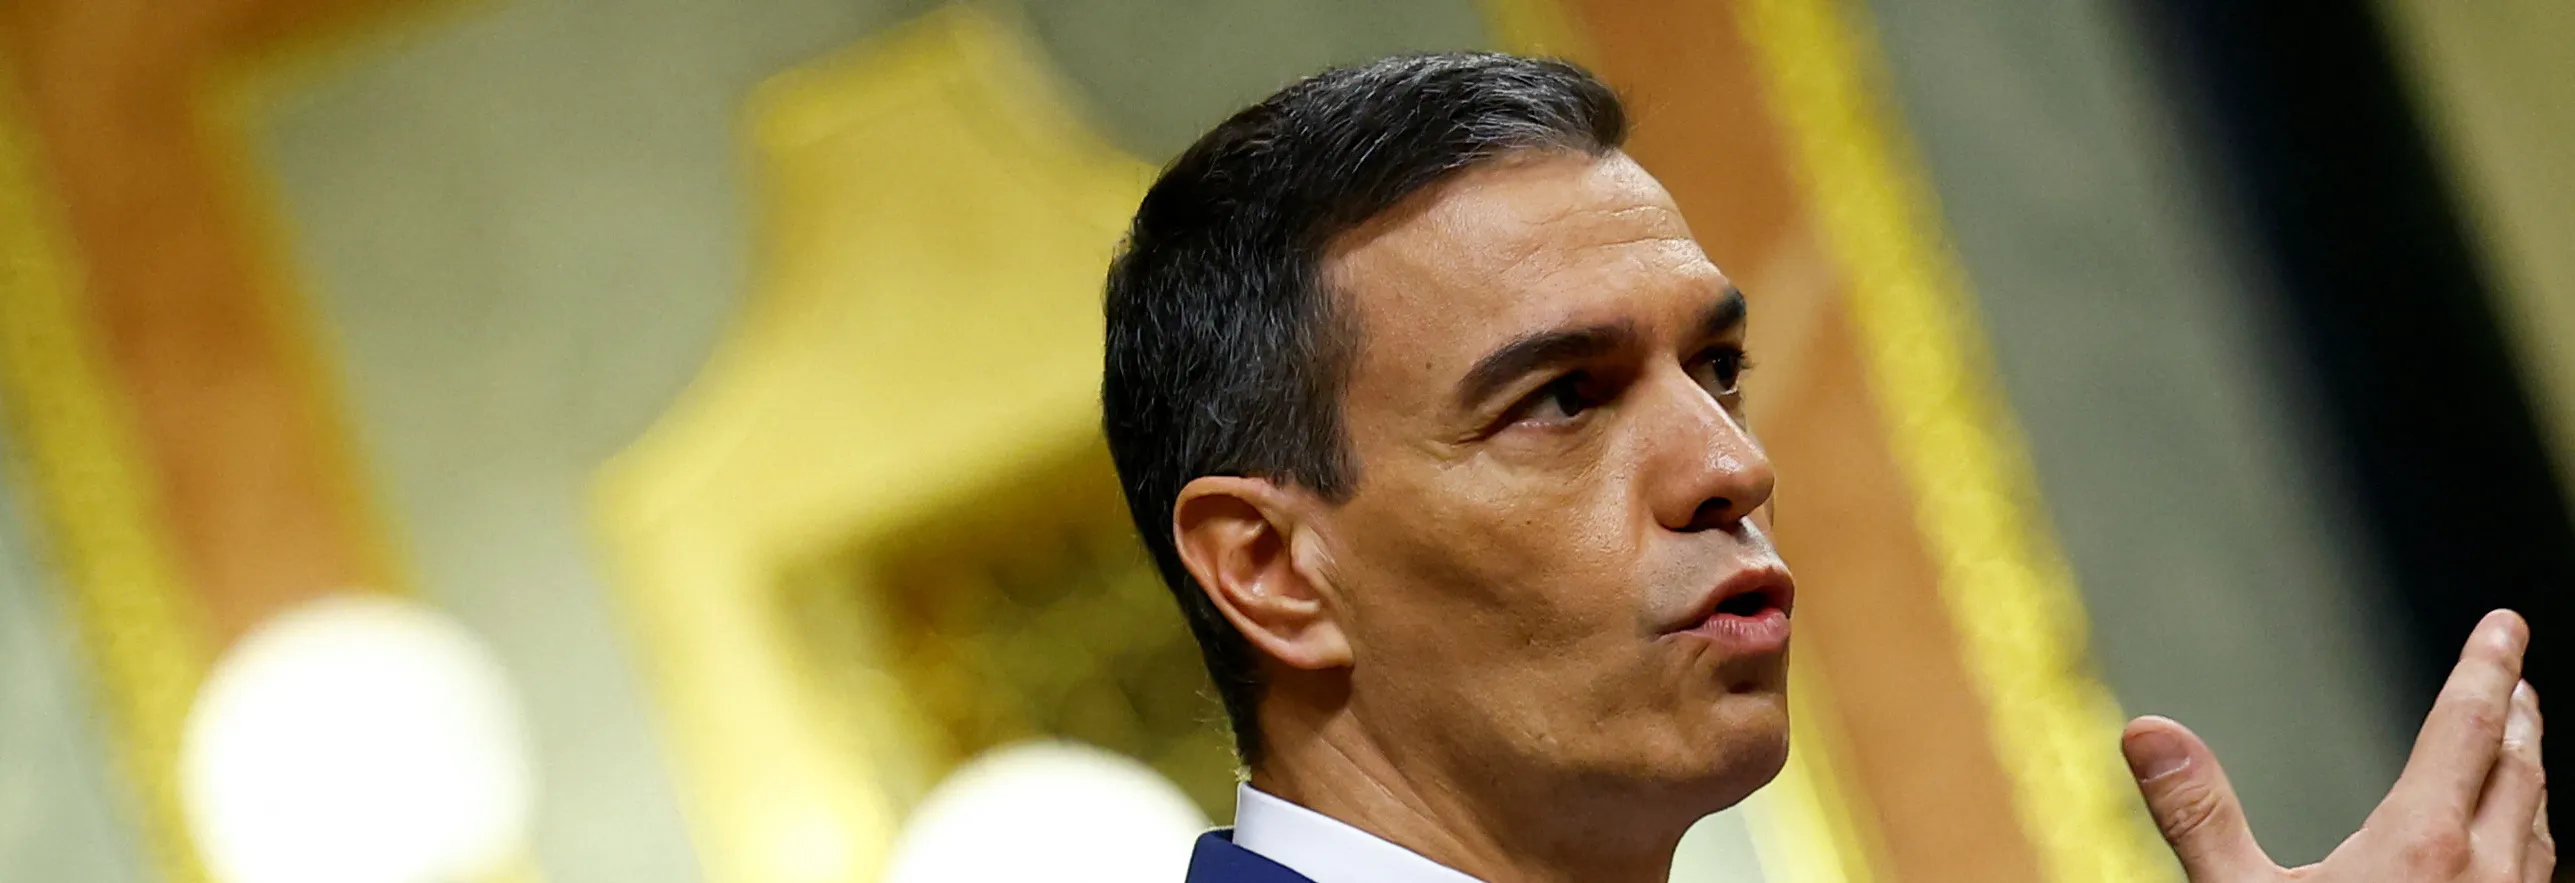 Španělský premiér Sánchez pozastavil výkon funkce kvůli vyšetřování manželky